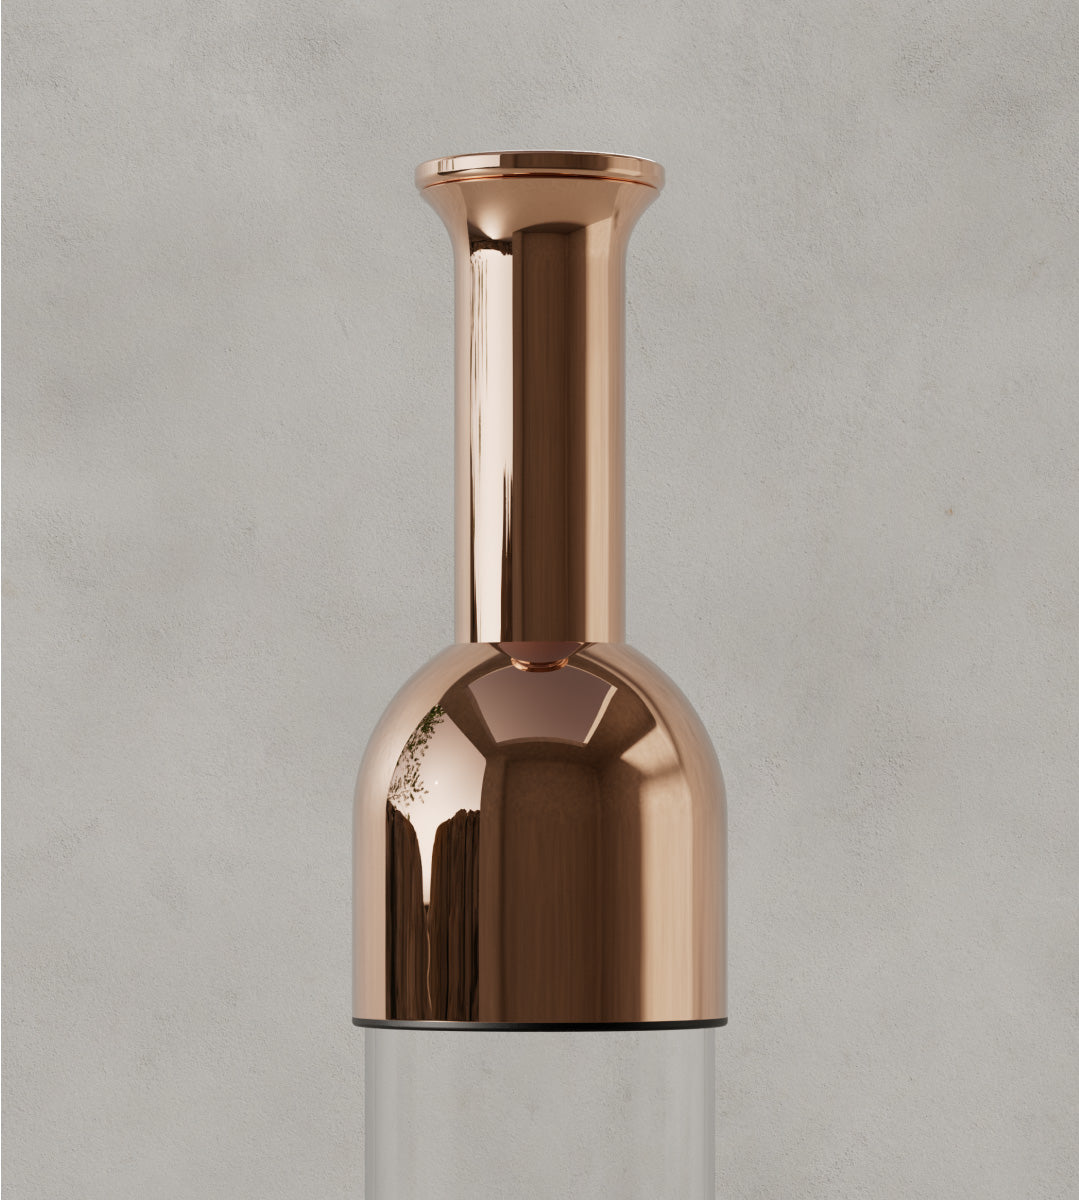 The finish on a copper mirror eto wine decanter